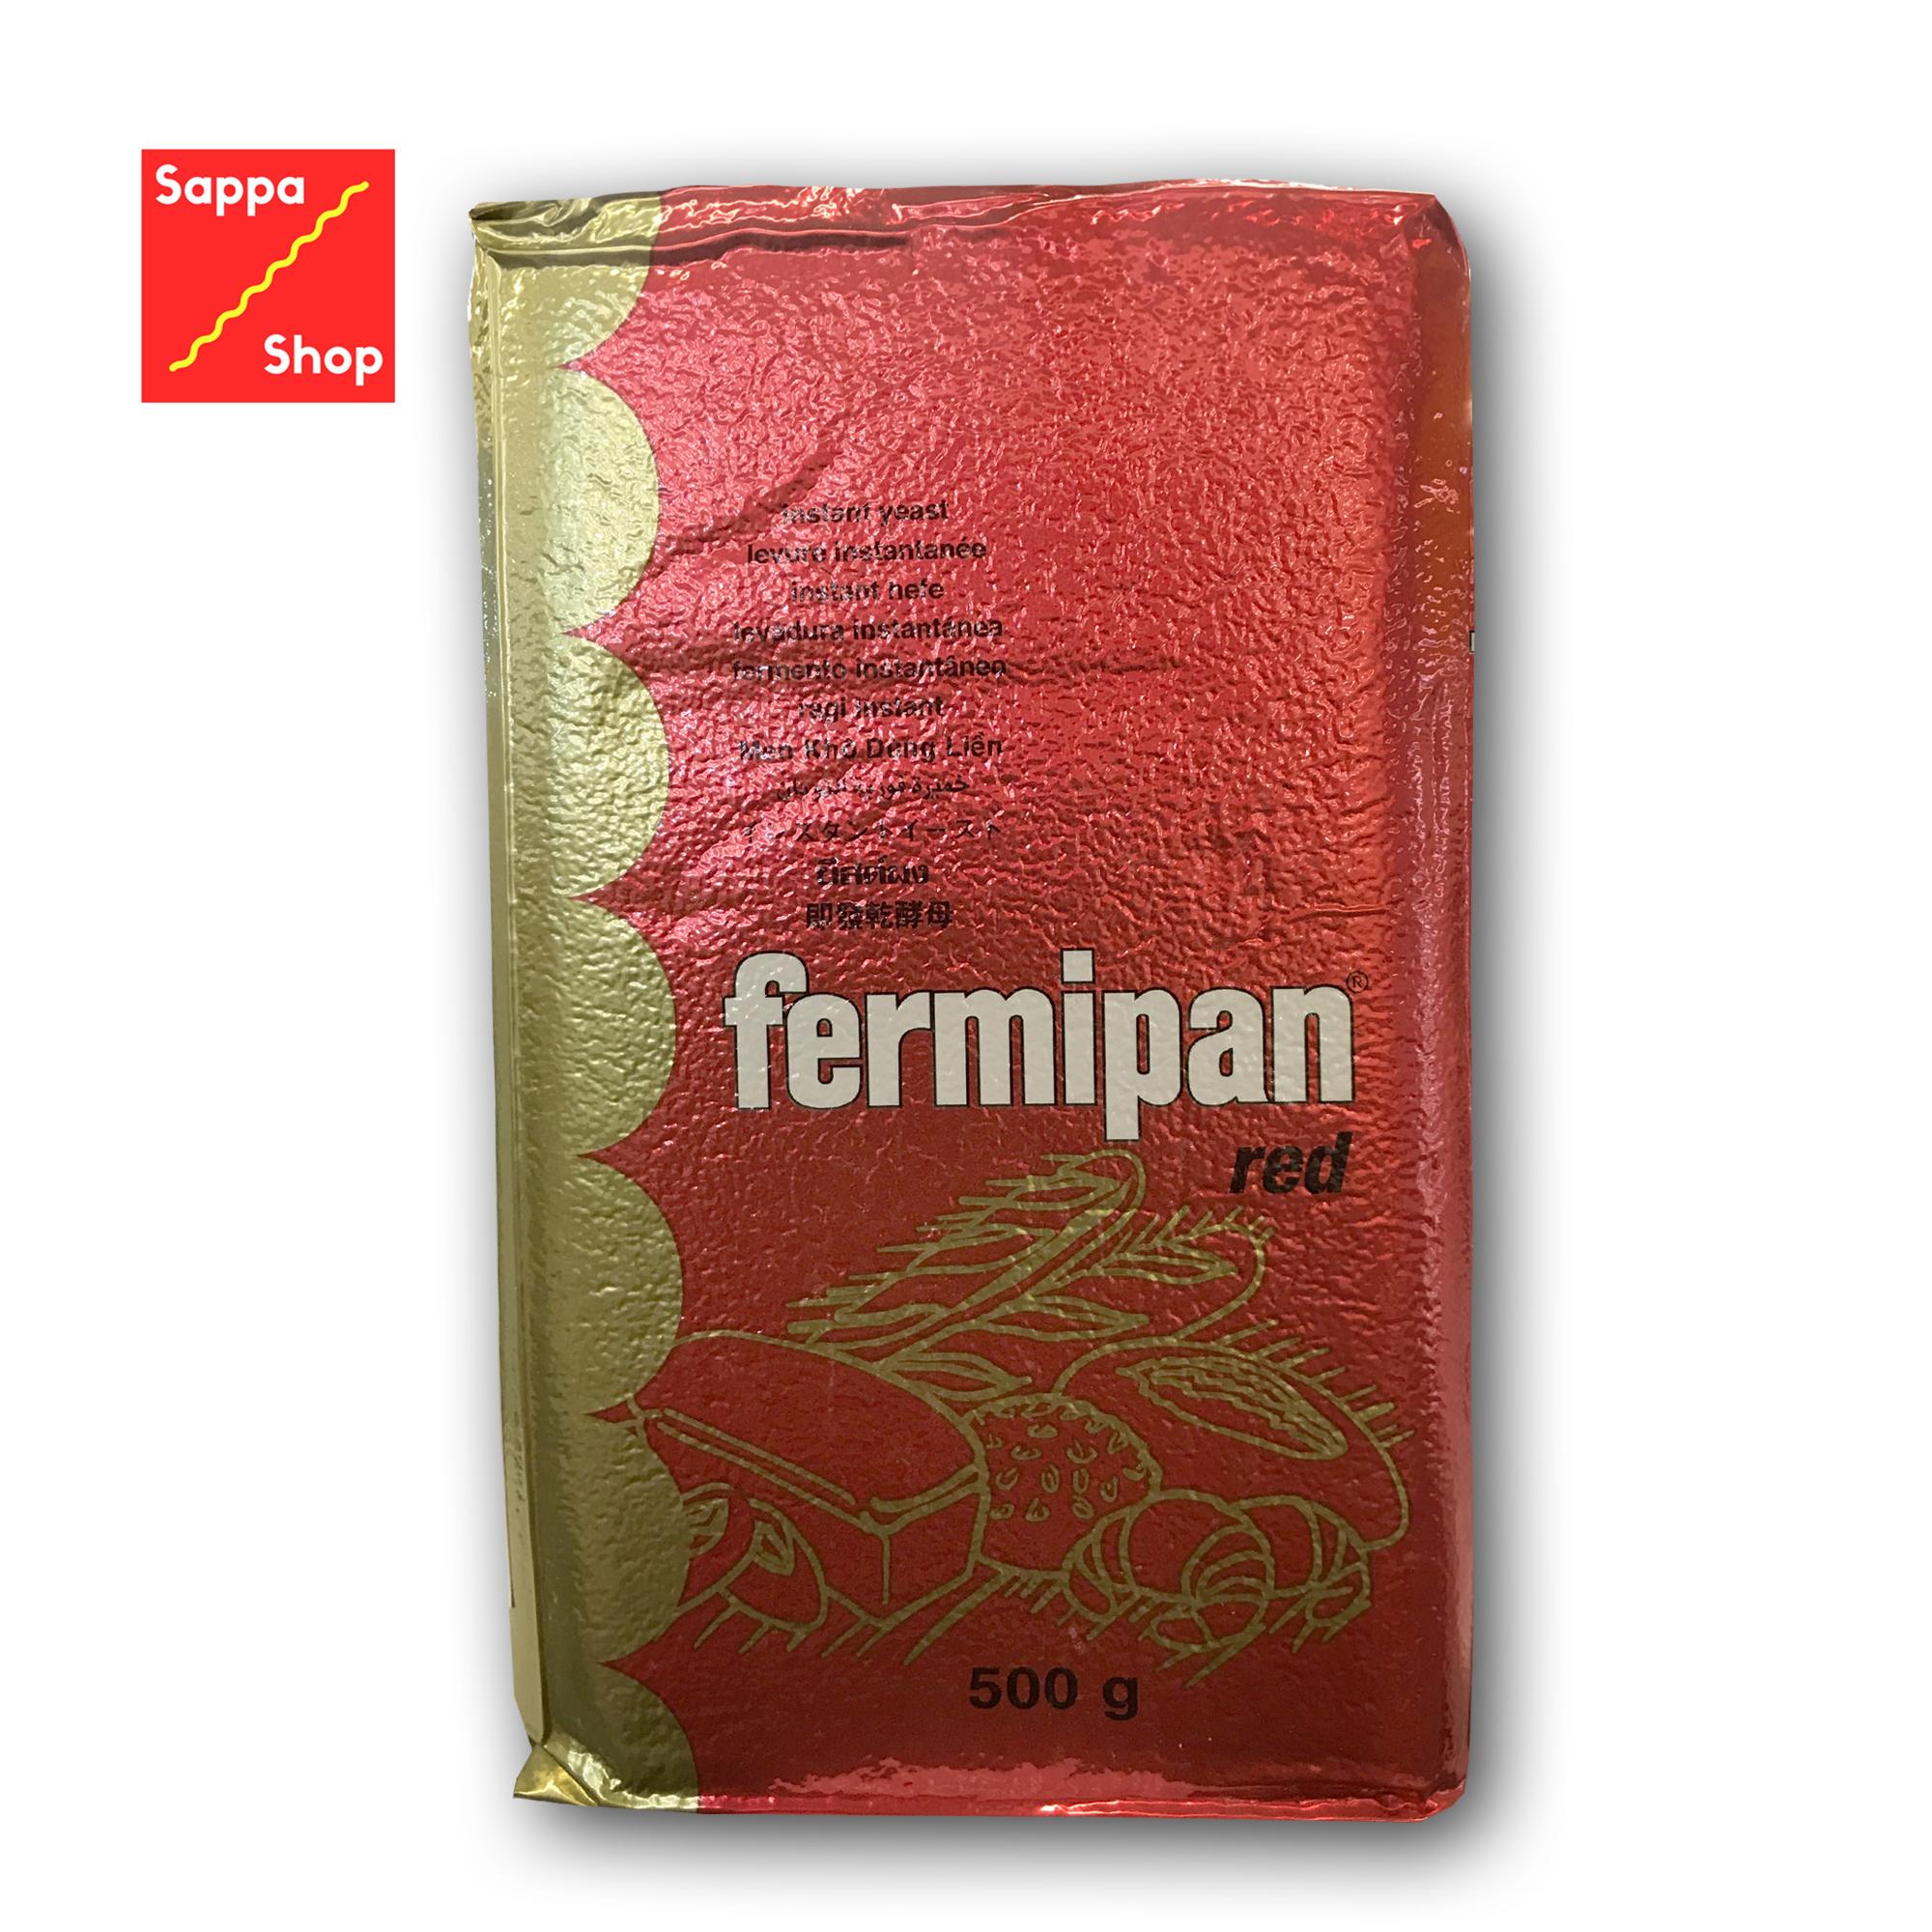 ยีสต์แห้งสำเร็จรูป Fermipan Red Instant เฟอร์มิพัน (สีแดง) สำหรับขนมปังจืด 500g.